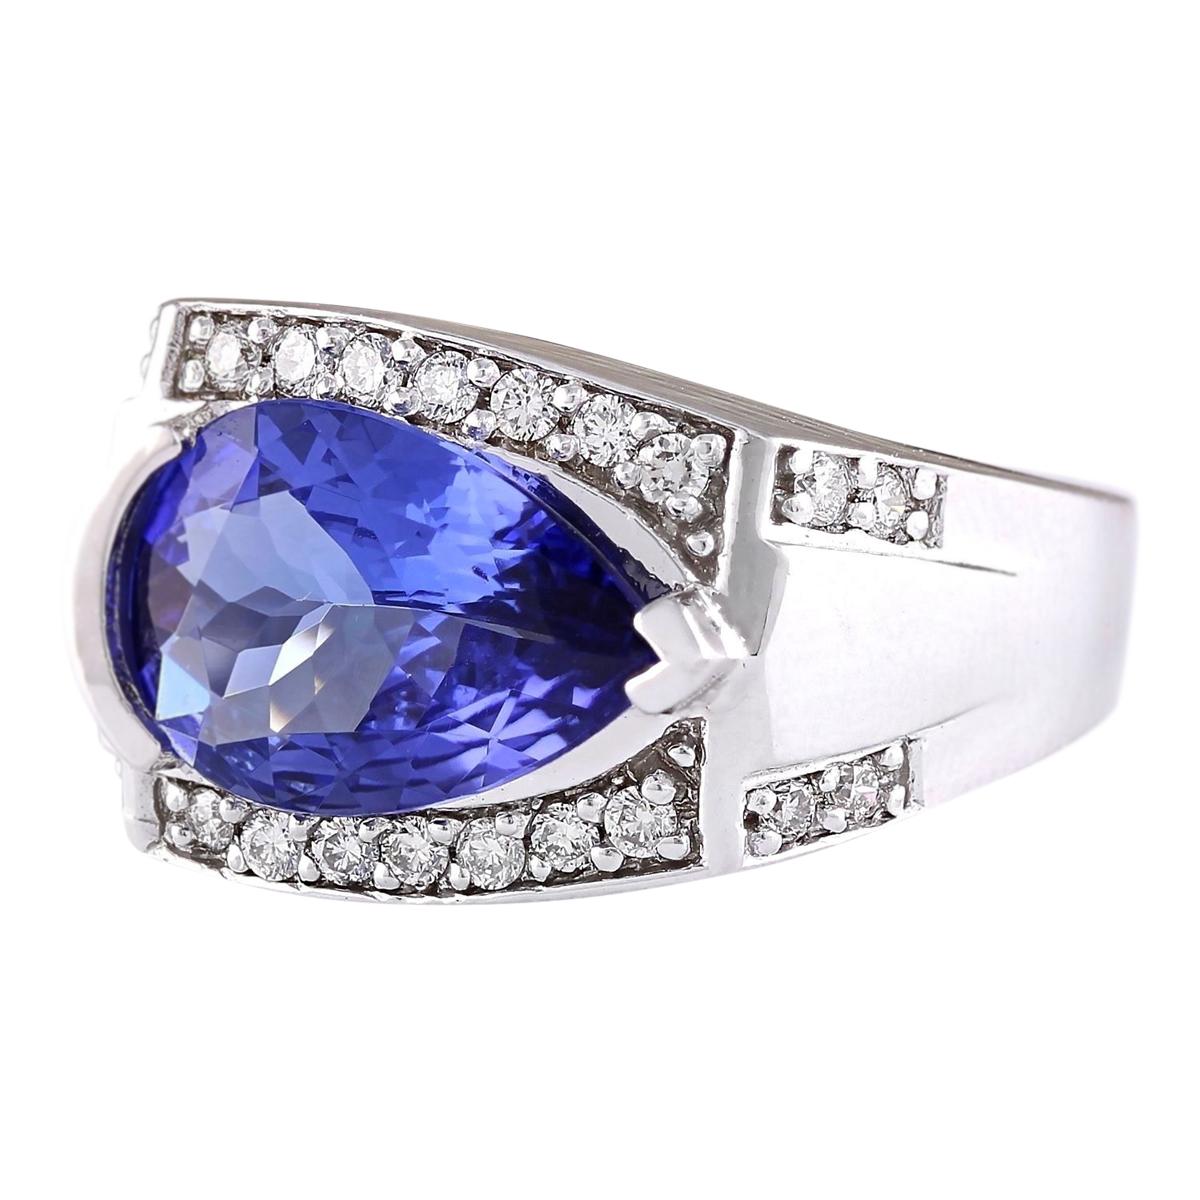 3.32 Carat Natural Tanzanite 14 Karat White Gold Diamond Ring
Stamped: 14K White Gold
Total Ring Weight: 8.0 Grams
Total Natural Tanzanite Weight is 2.87 Carat (Measures: 12.00x9.00 mm)
Color: Blue
Total Natural Diamond Weight is 0.45 Carat
Color: